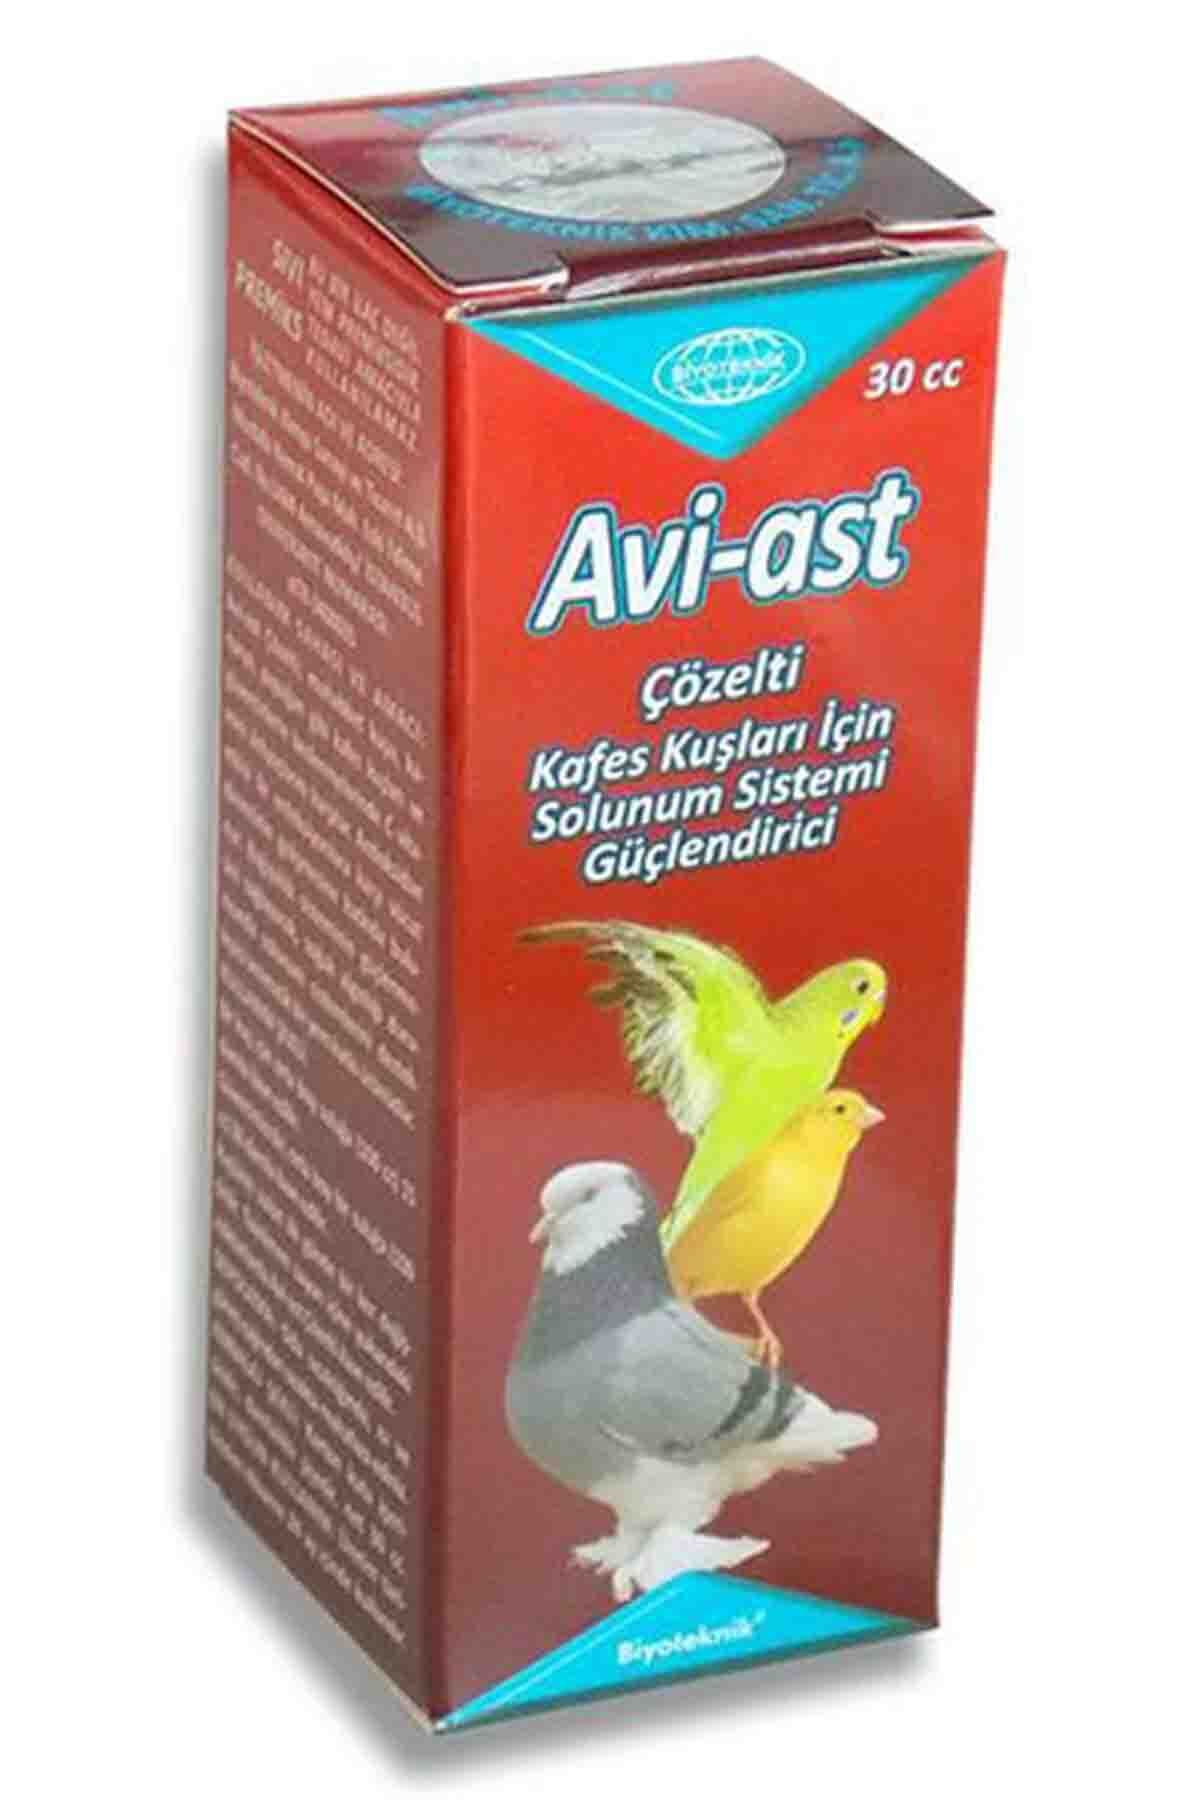 Aviast Kuşlar İçin Solunum Sistemi Güçlendirici 30 cc kuş solunum destek vitamin c antioksidan